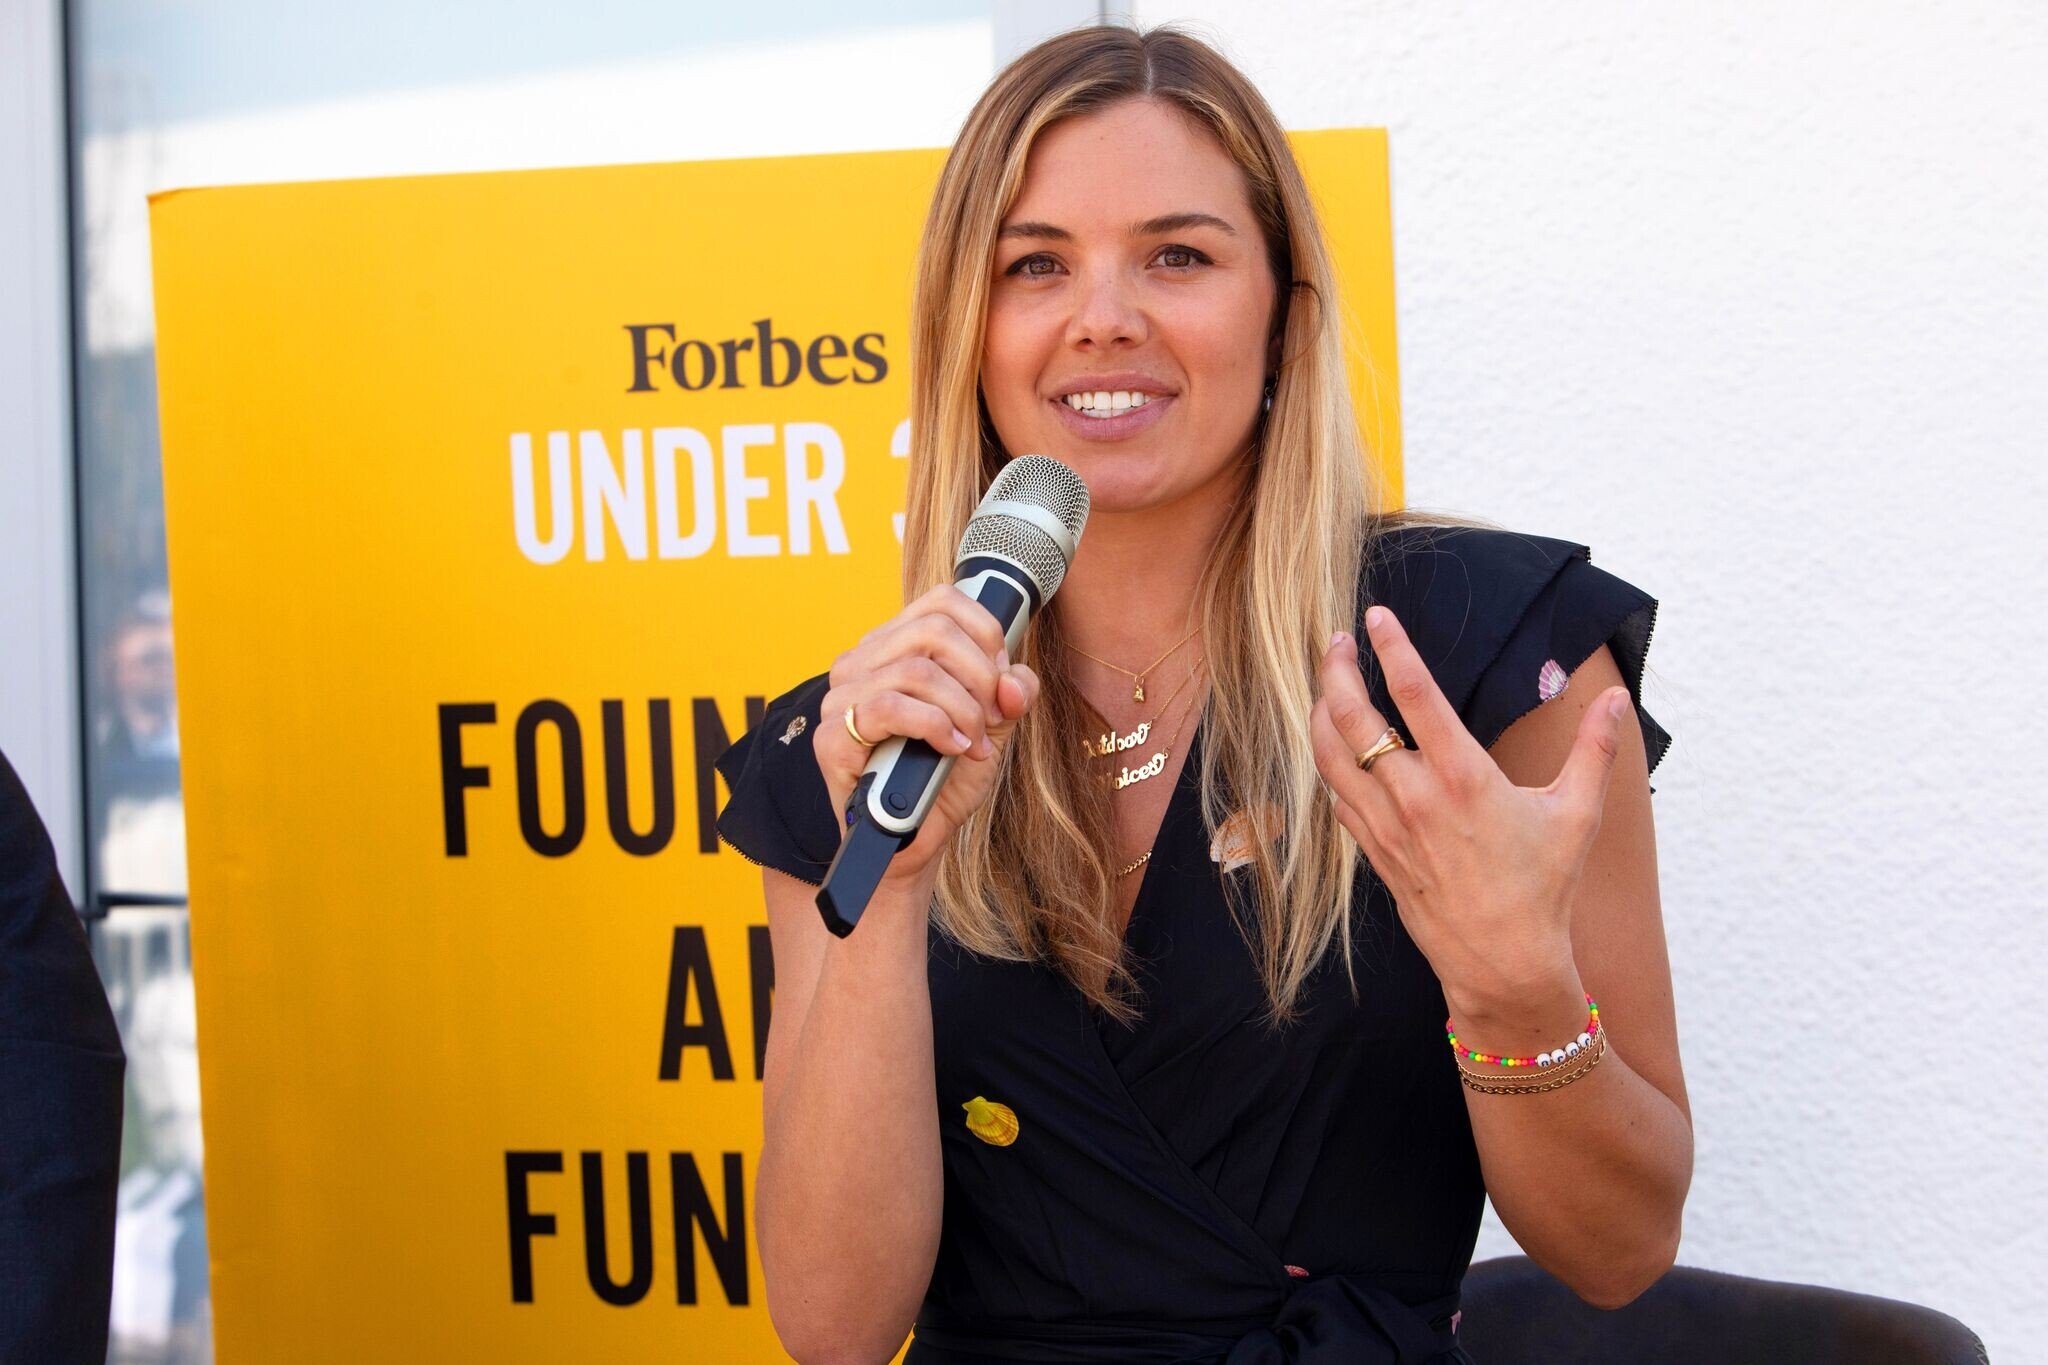 Forbes Under 30 Global poprvé v Evropě. Bratislava přivítá lídry z více než 30 zemí